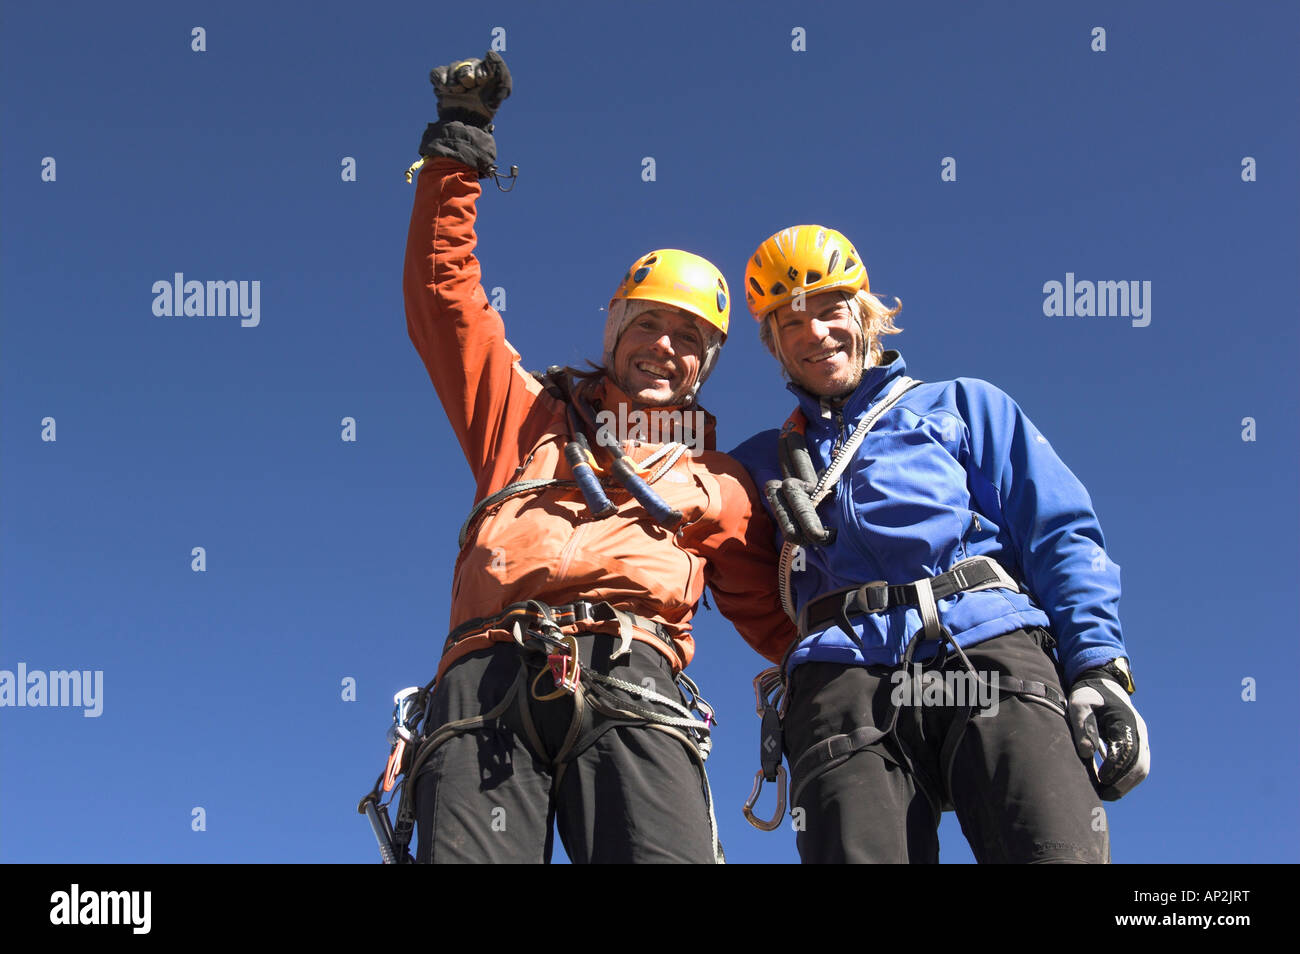 Deux hommes ayant terminé le parcours réel Senda, Cerro Marmolejo, 6085 m, Escalade sur glace, Chili Banque D'Images